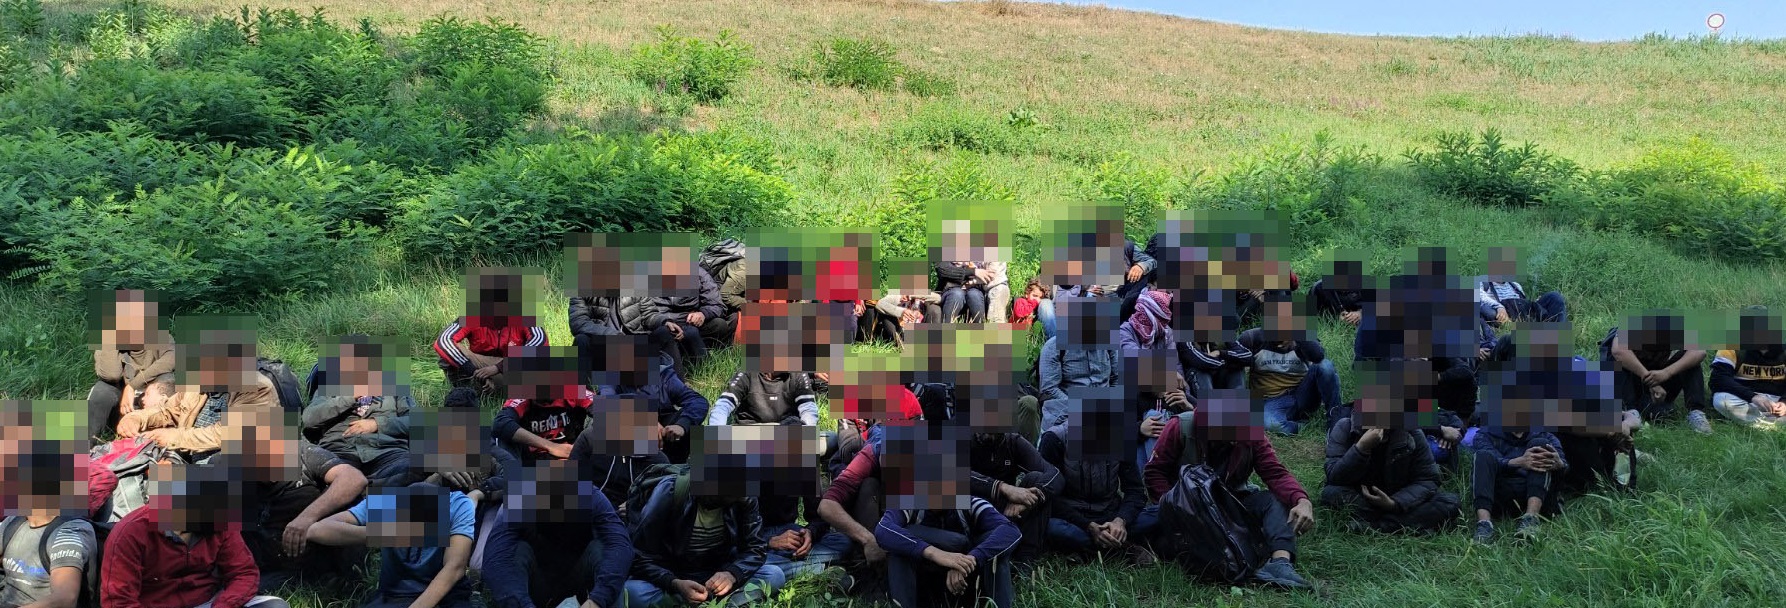 Migranten versuchten in Mórahalom gewaltsam ins Land zu gelangen